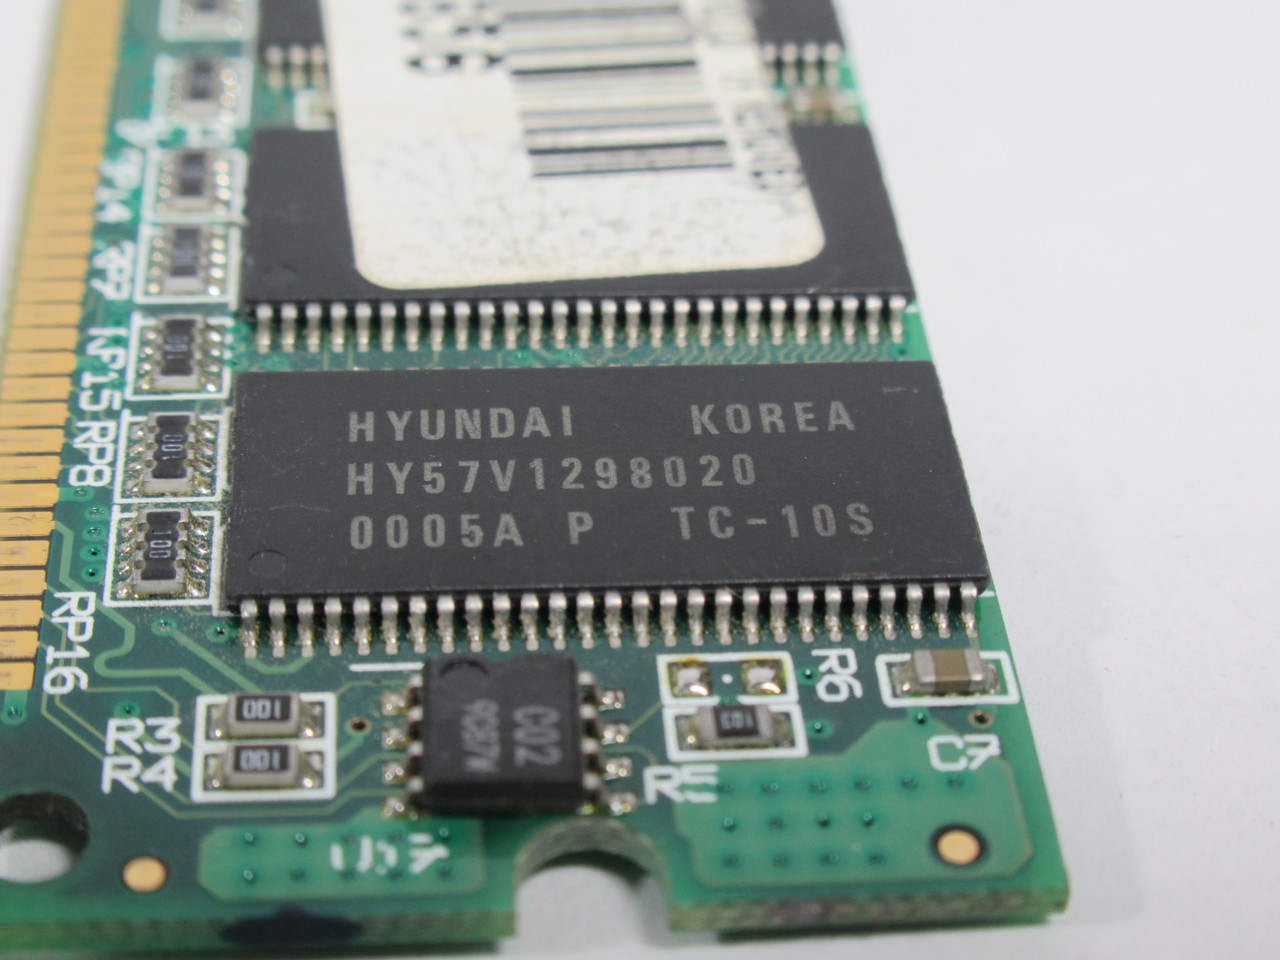 Hyundai HY57V1298020-PTC-10S SDRam Memory 256MB 100MHz XR-DM168/256/100/16 USED